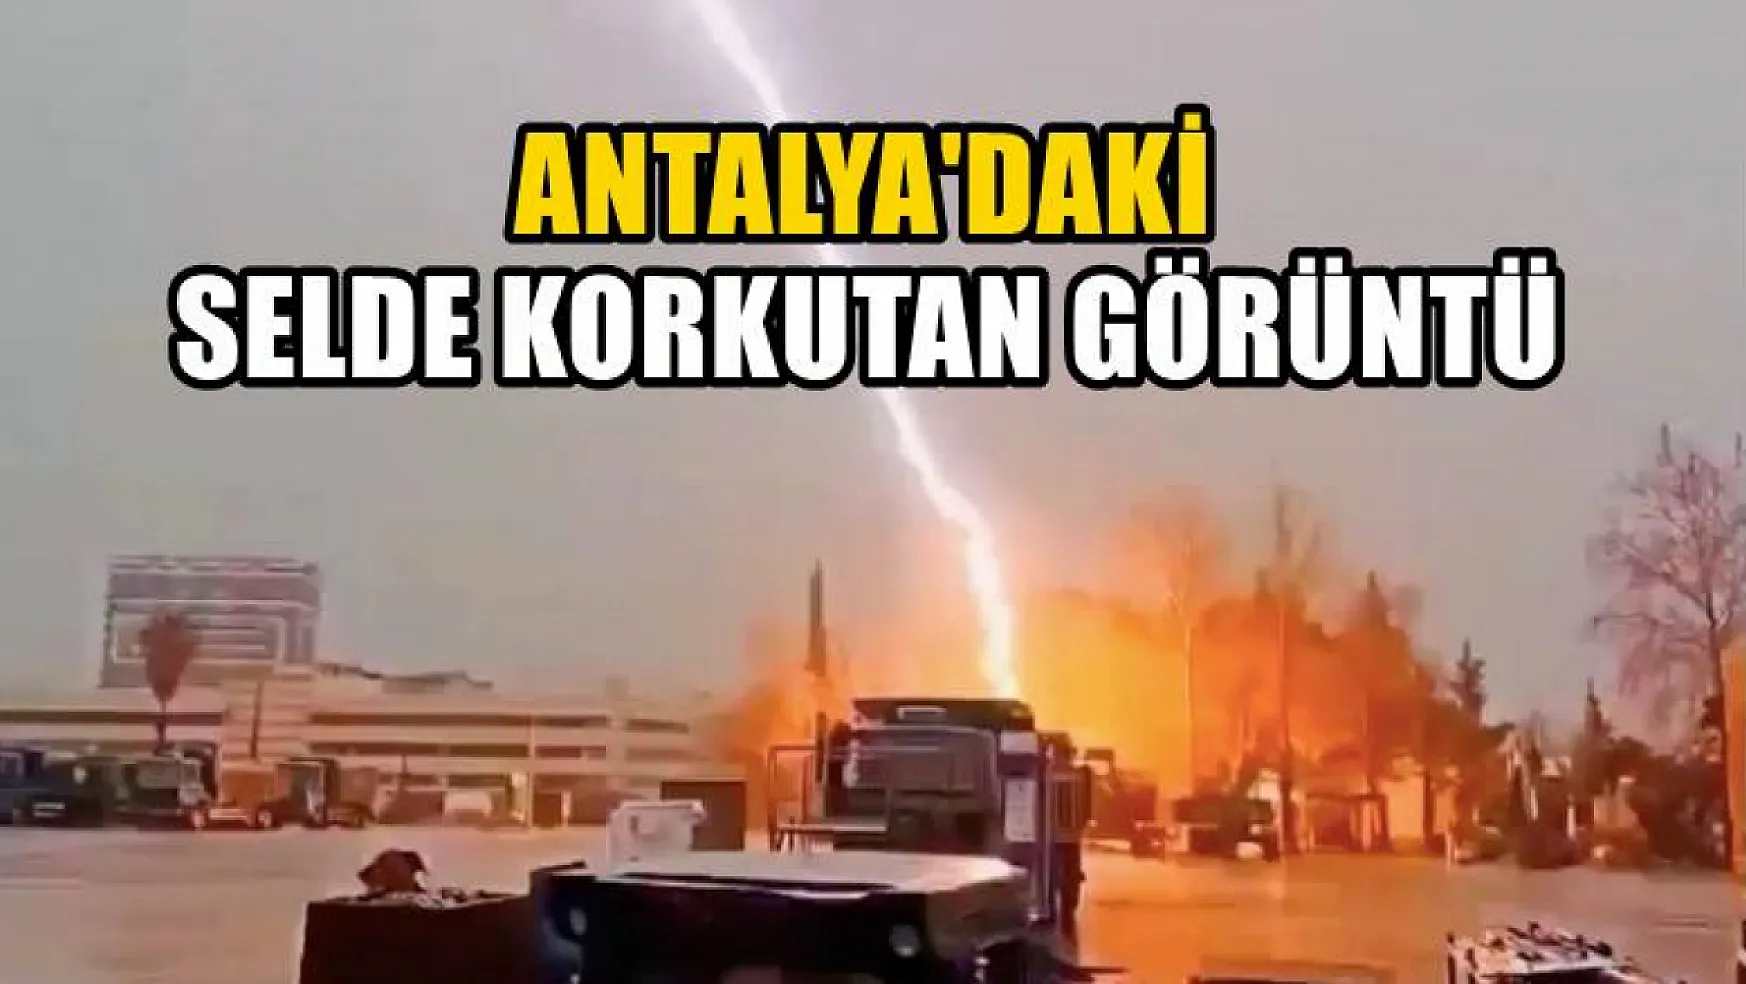 Antalya'daki selde korkutan görüntü